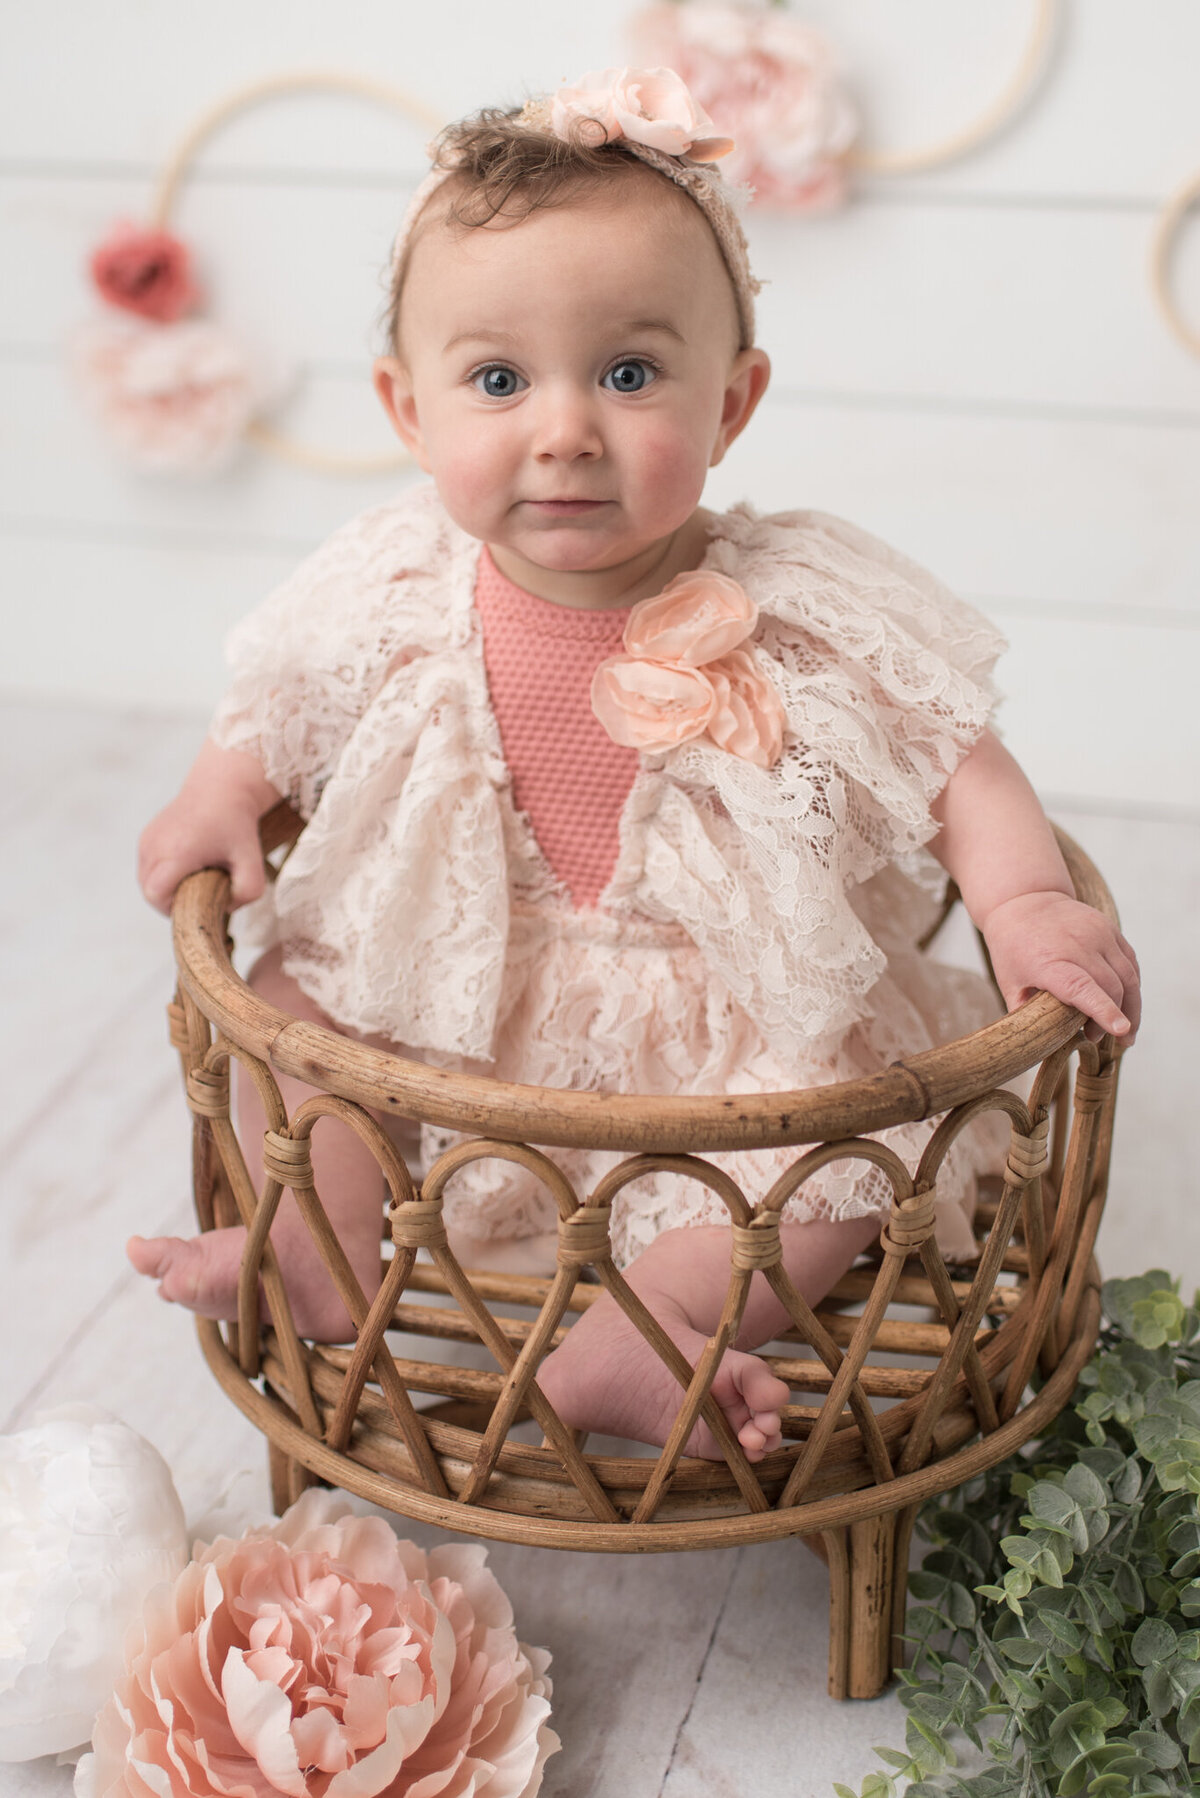 Baby girl sitting in basket, smiling at camera